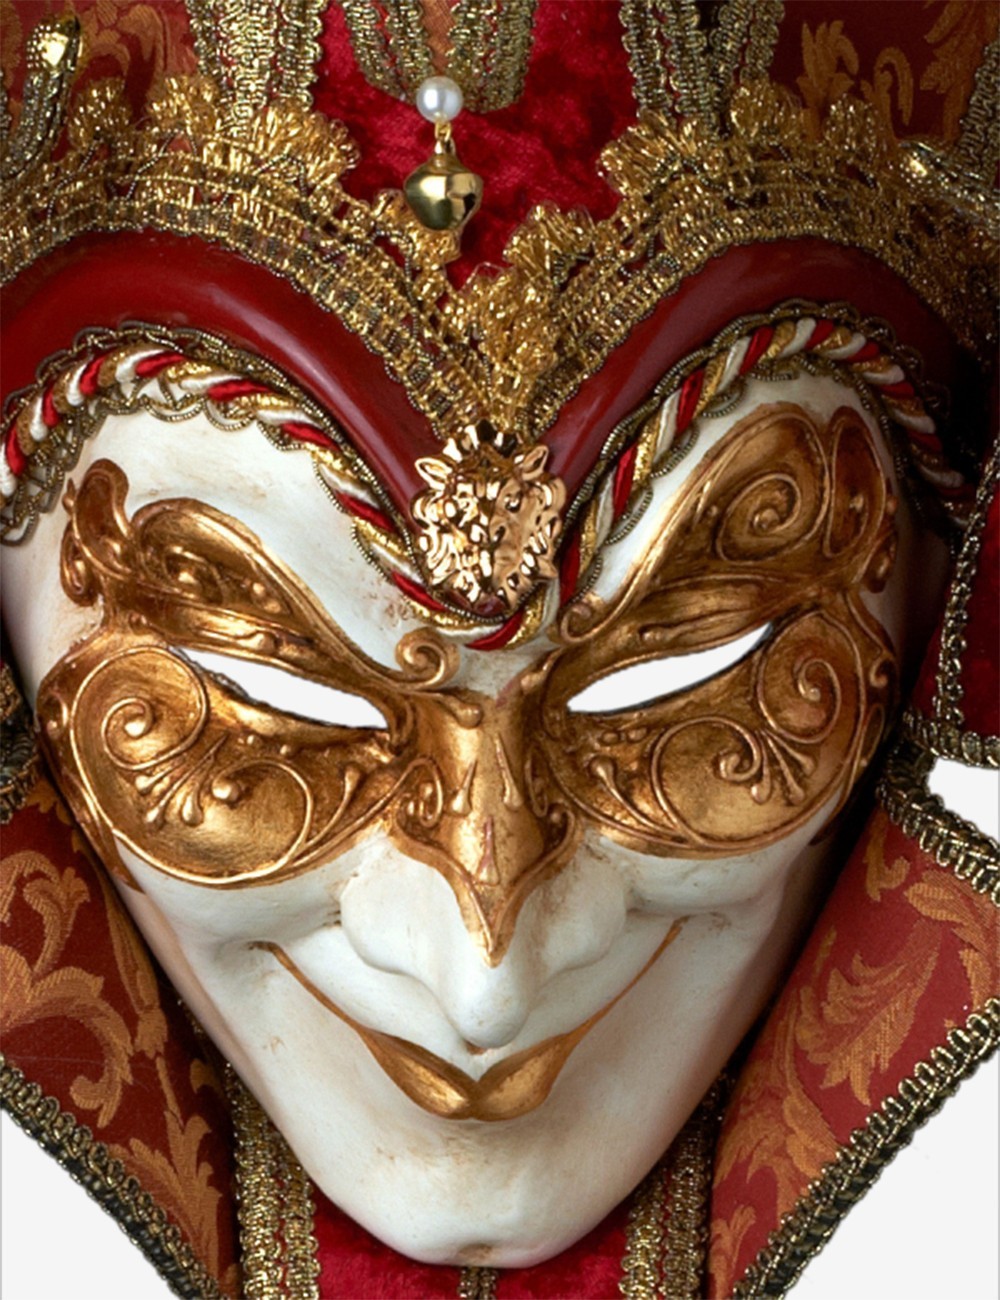 Joker Damascato - Dettagli della maschera veneziana